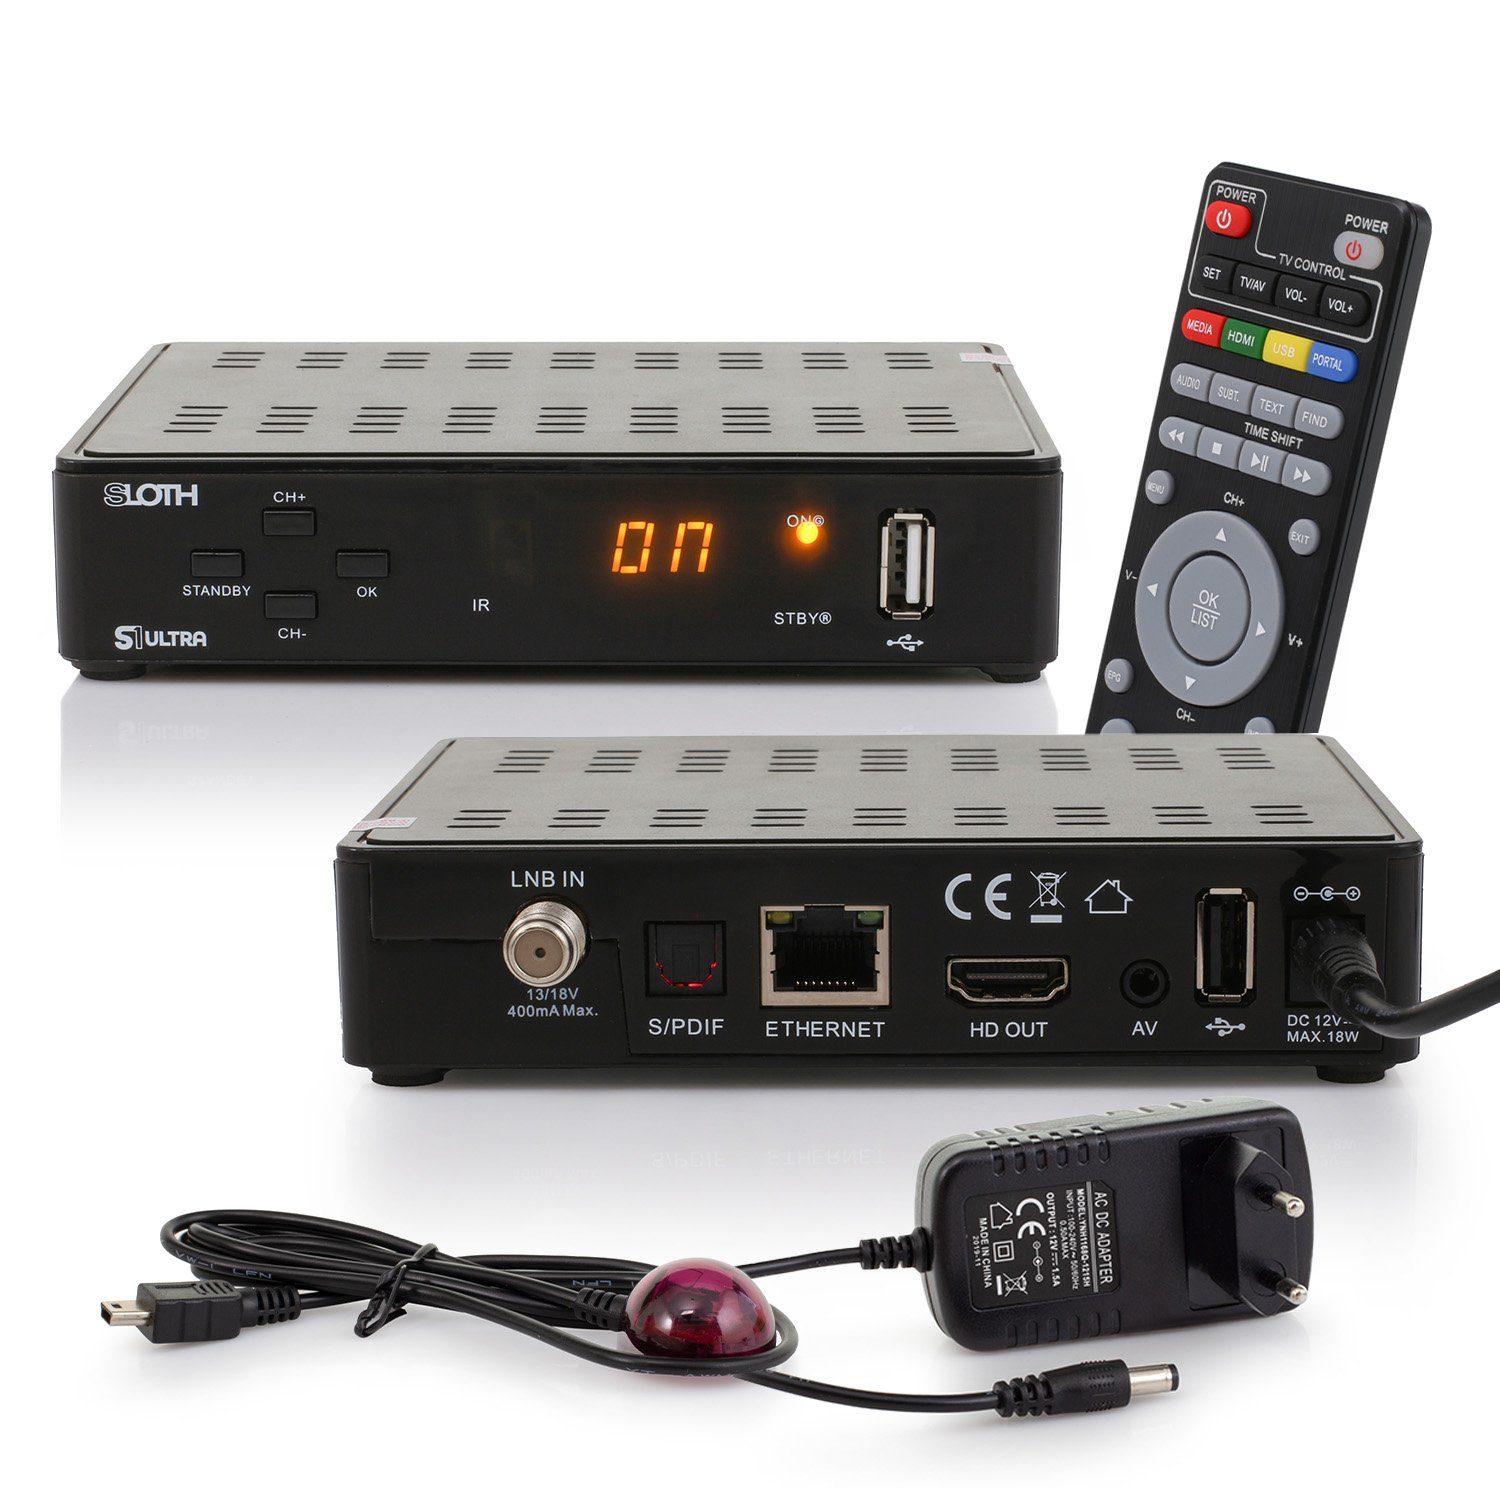 (PVR LAN, HD SAT-Receiver USB, Netzteil) S1 12V RED 1080p, Aufnahmefunktion, mit S/PDIF, OPTICUM Sloth lernbarer ultra Fernbedienung HDMI,